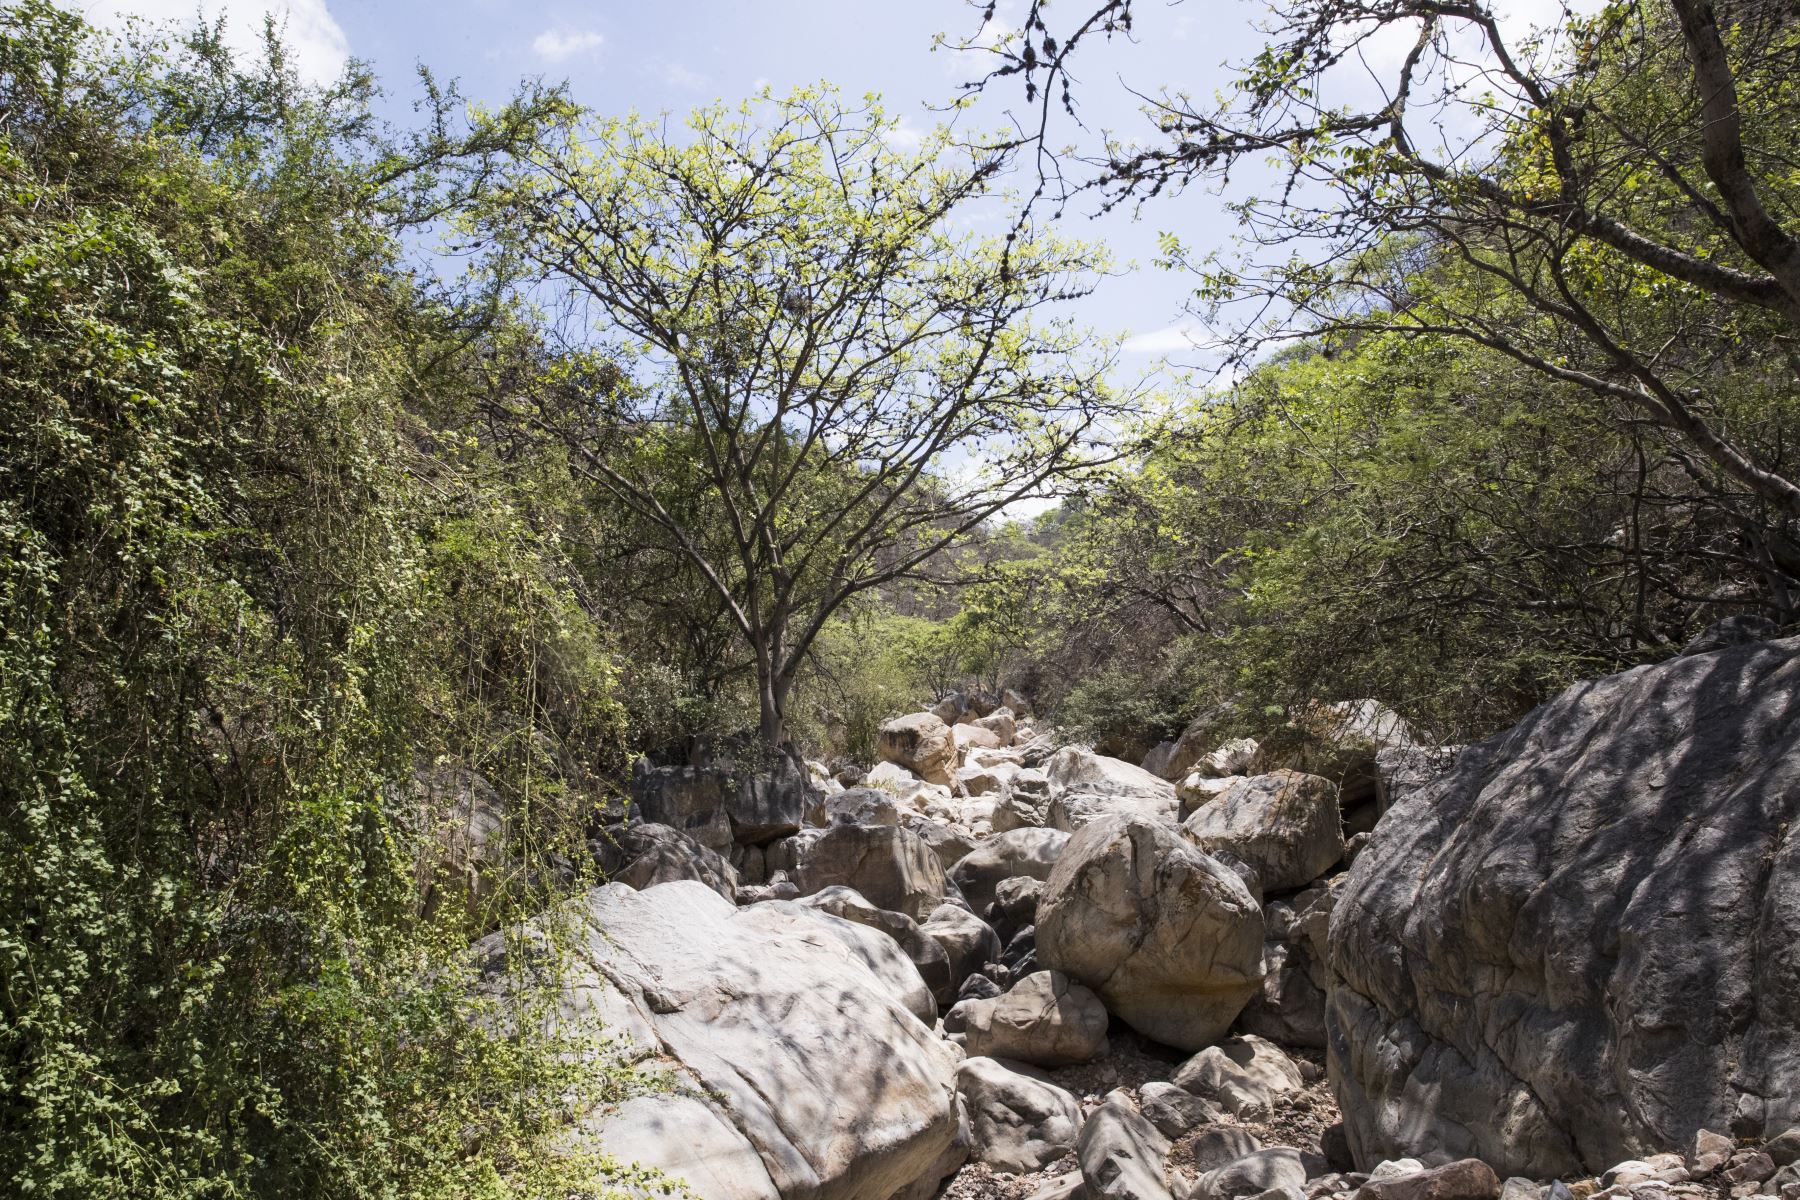 La reserva ecológica Chaparrí está conformada por 34,412 hectáreas y es la primera área de conservación privada creada en el Perú. Foto: ANDINA/Carlos Lezama.